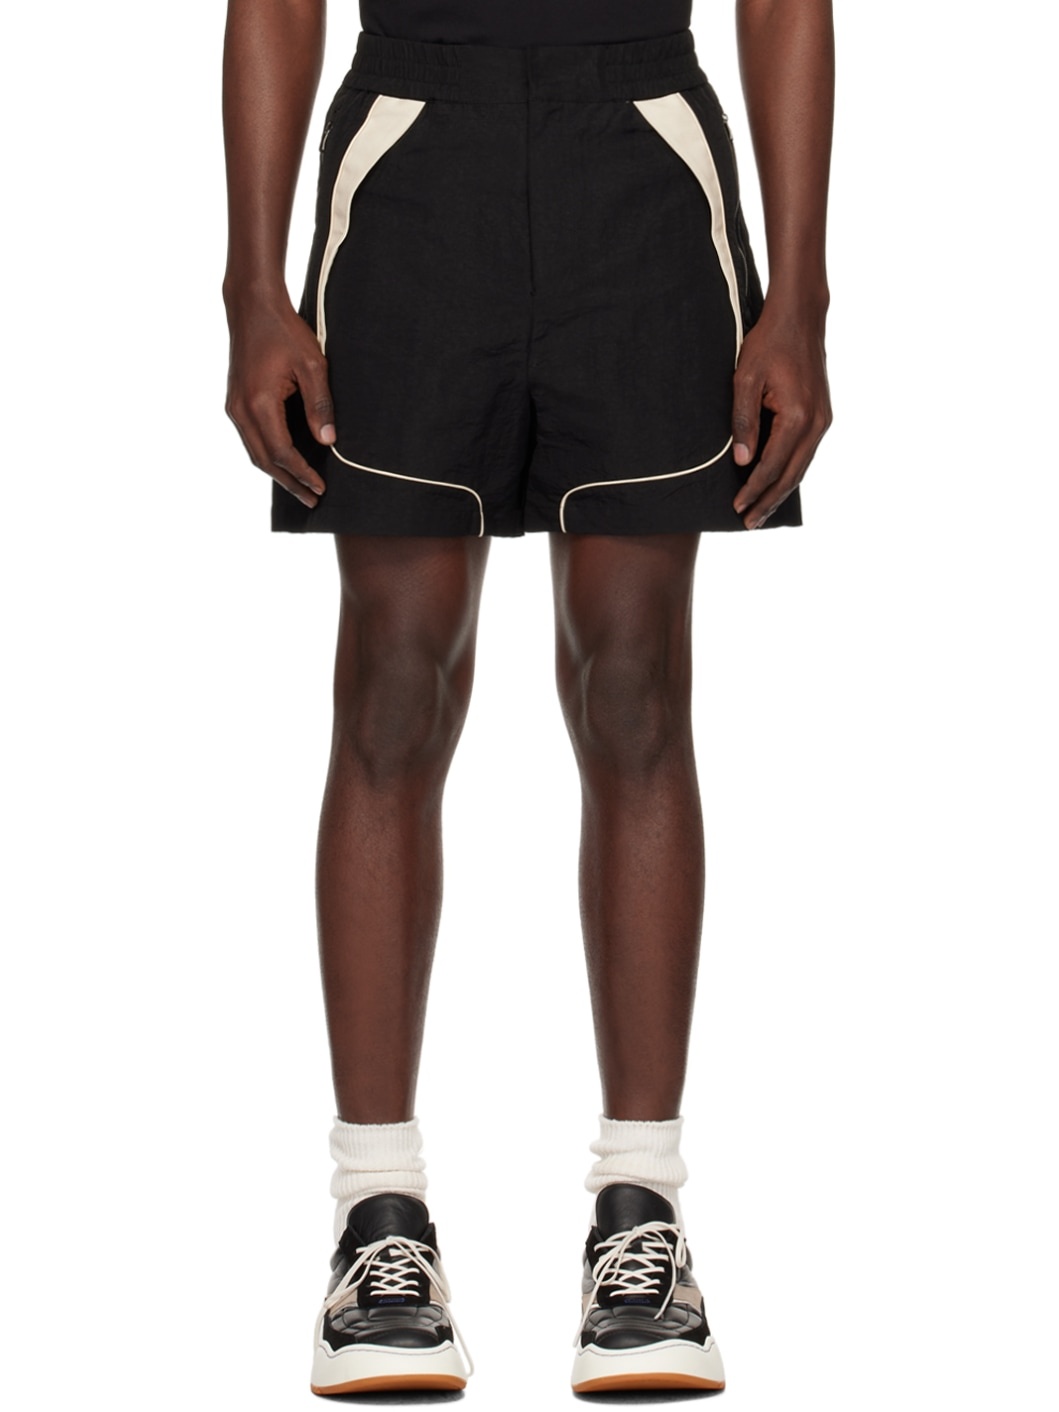 Black Trim Shorts - 1